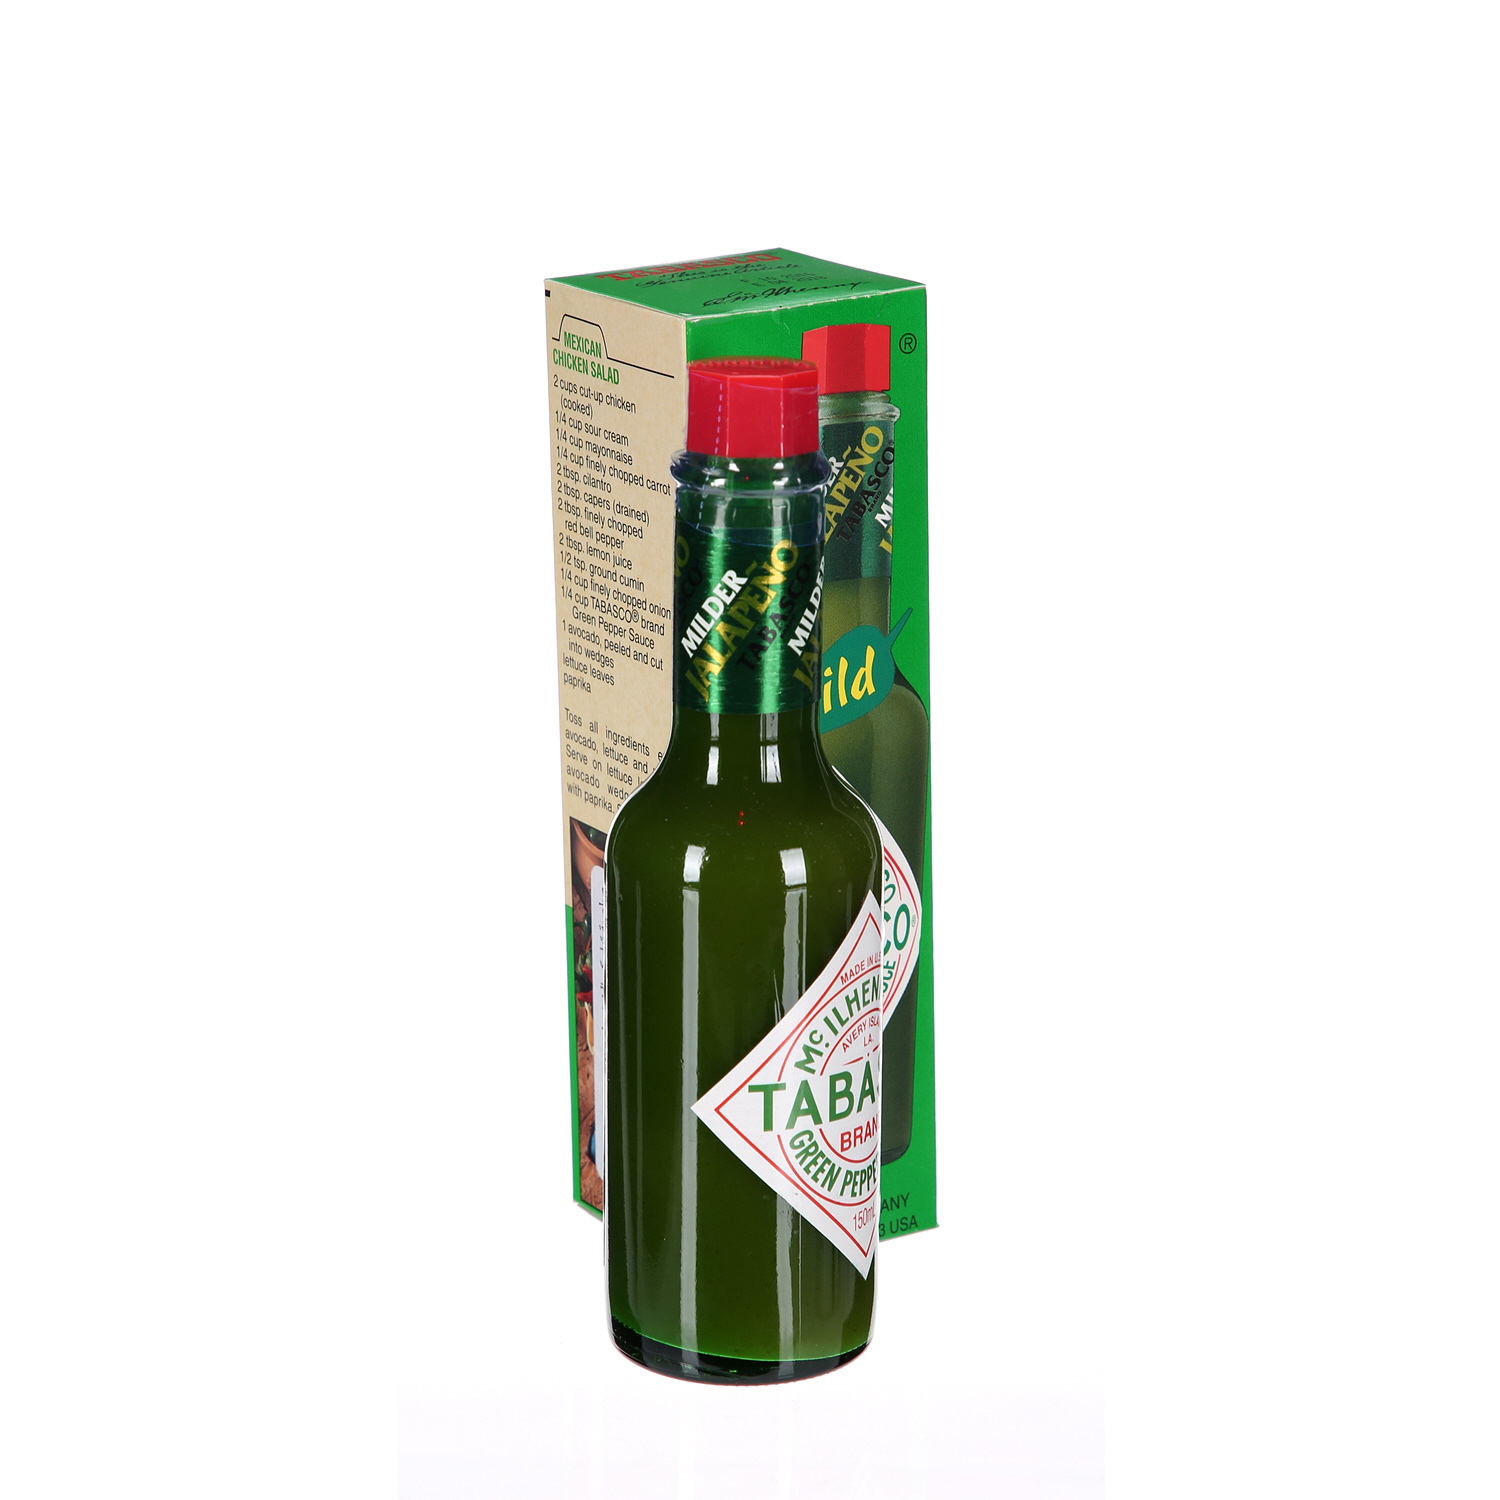 Tabasco Green Pepper Sauce 150ml